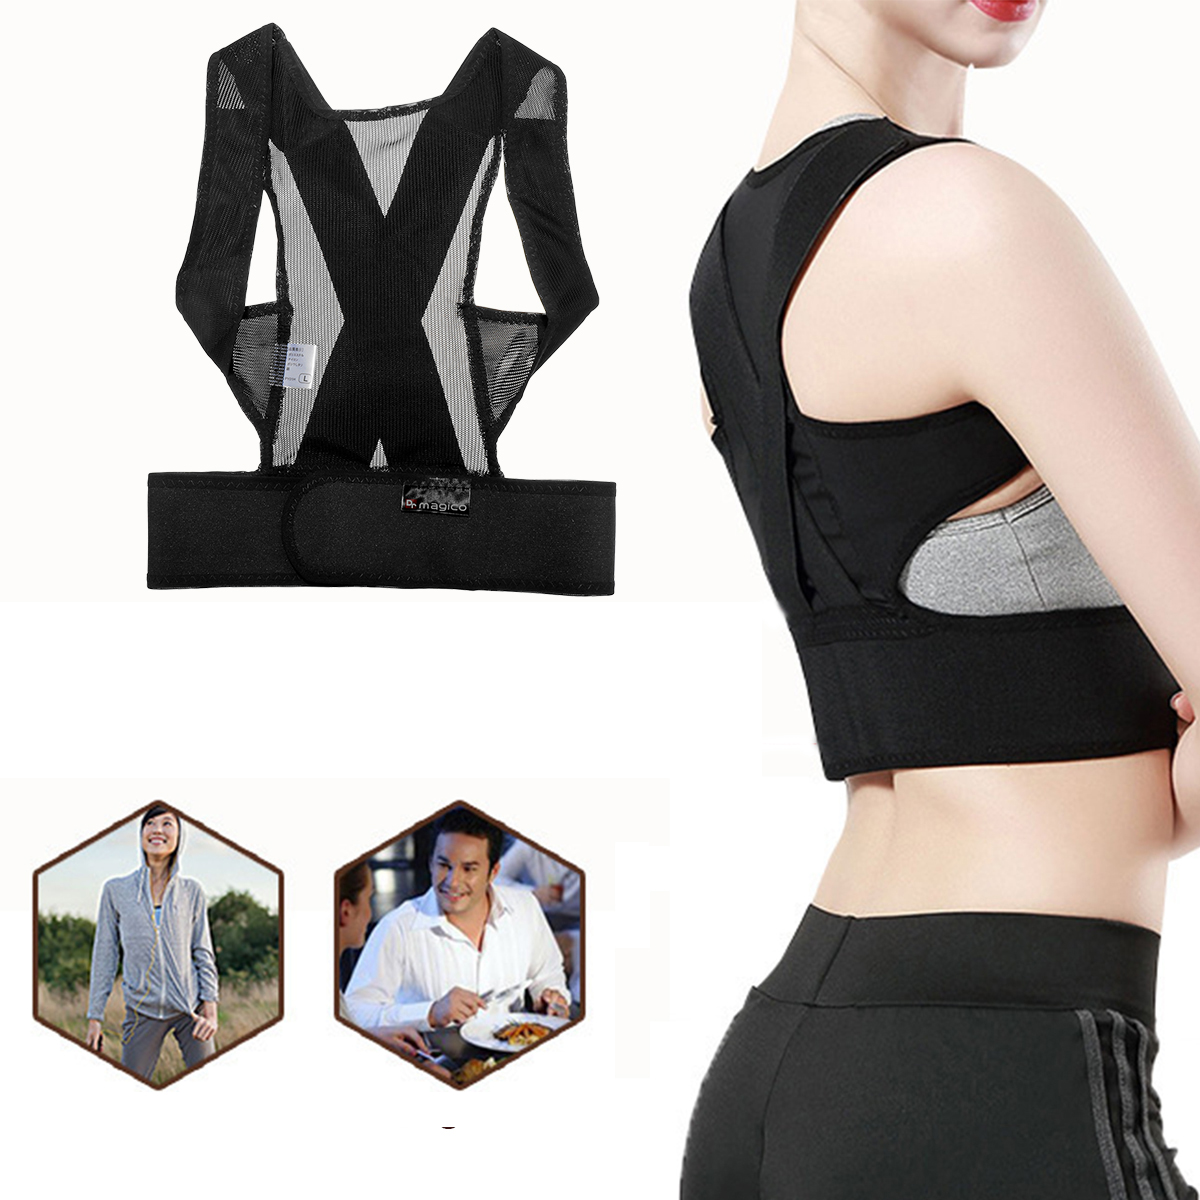 

KALOAD 8-shape Design Adults Kids Adjustable Therapy Posture Corrector Shoulder Back Support Belt